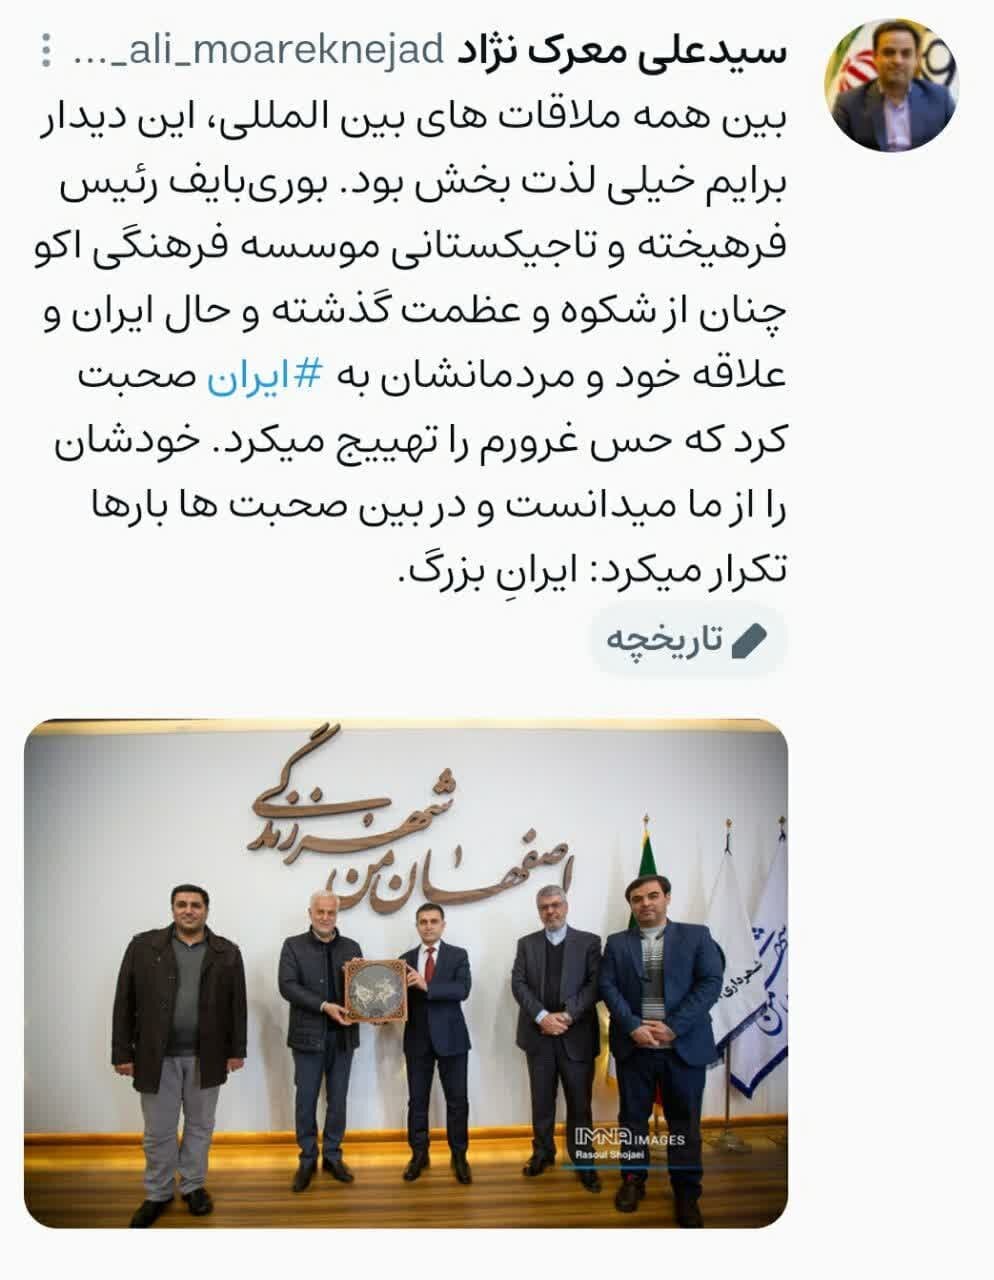 افتخار و غرور به ایران بزرگ